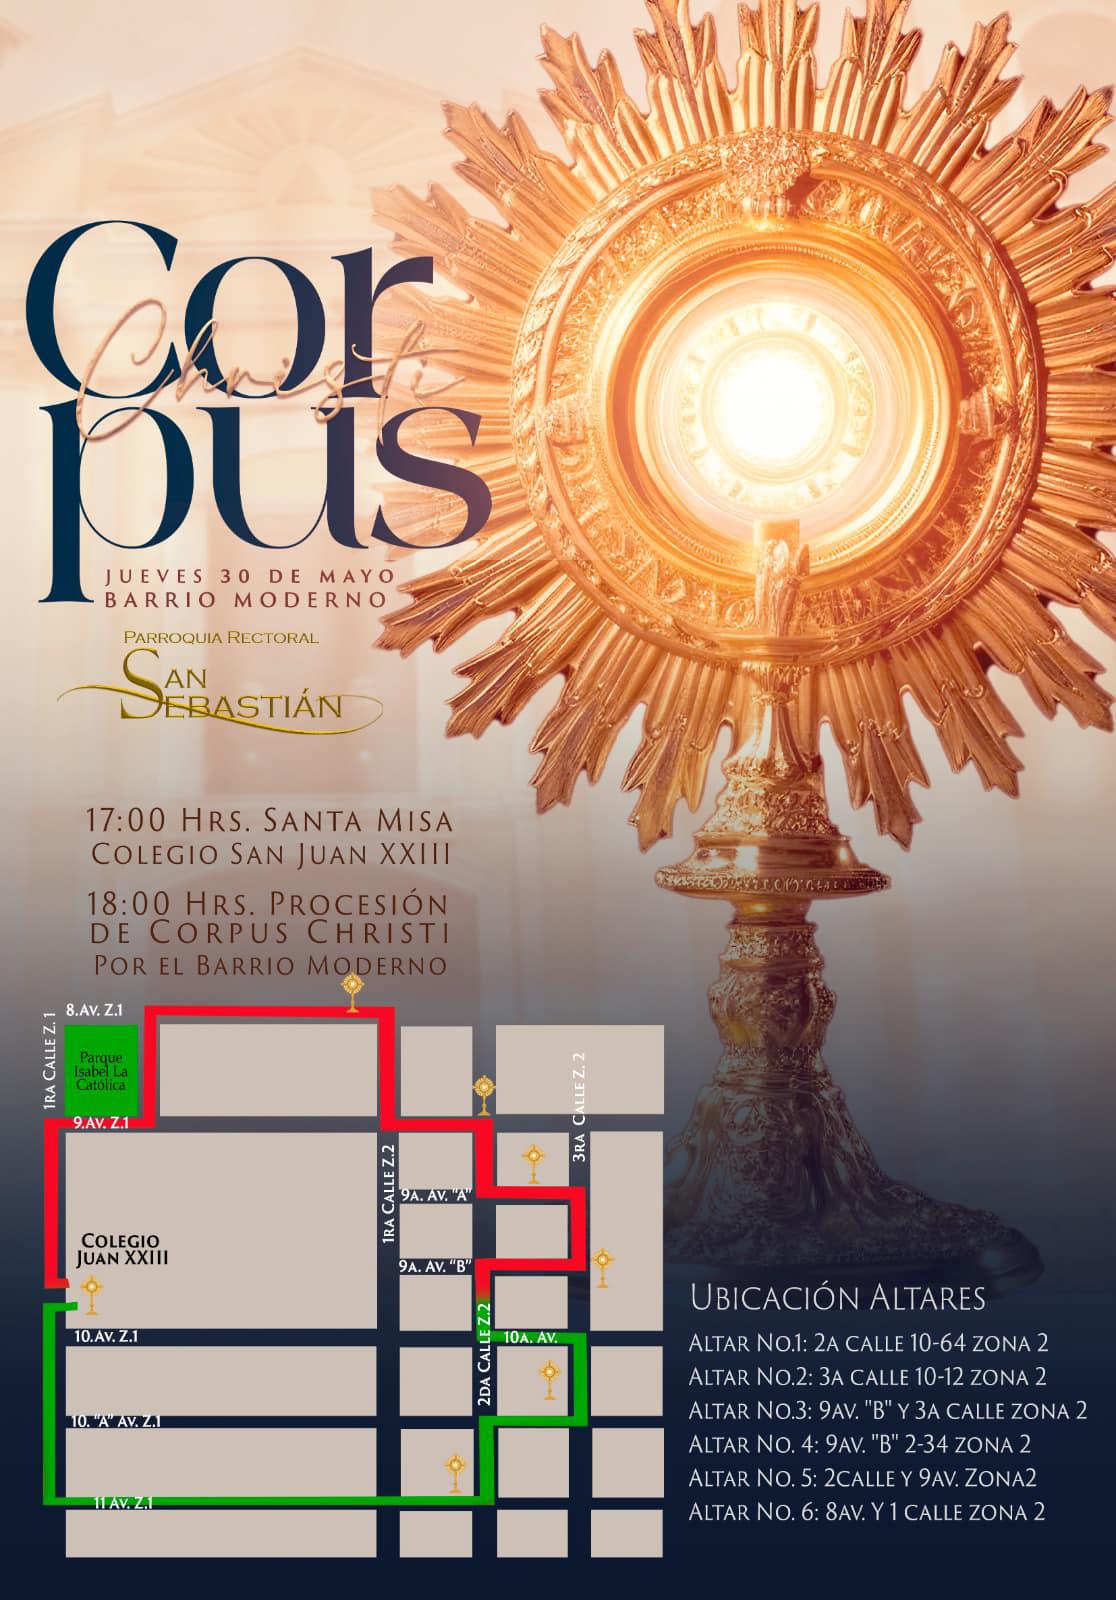 Recopilación de Programas de actividades de Corpus Christi